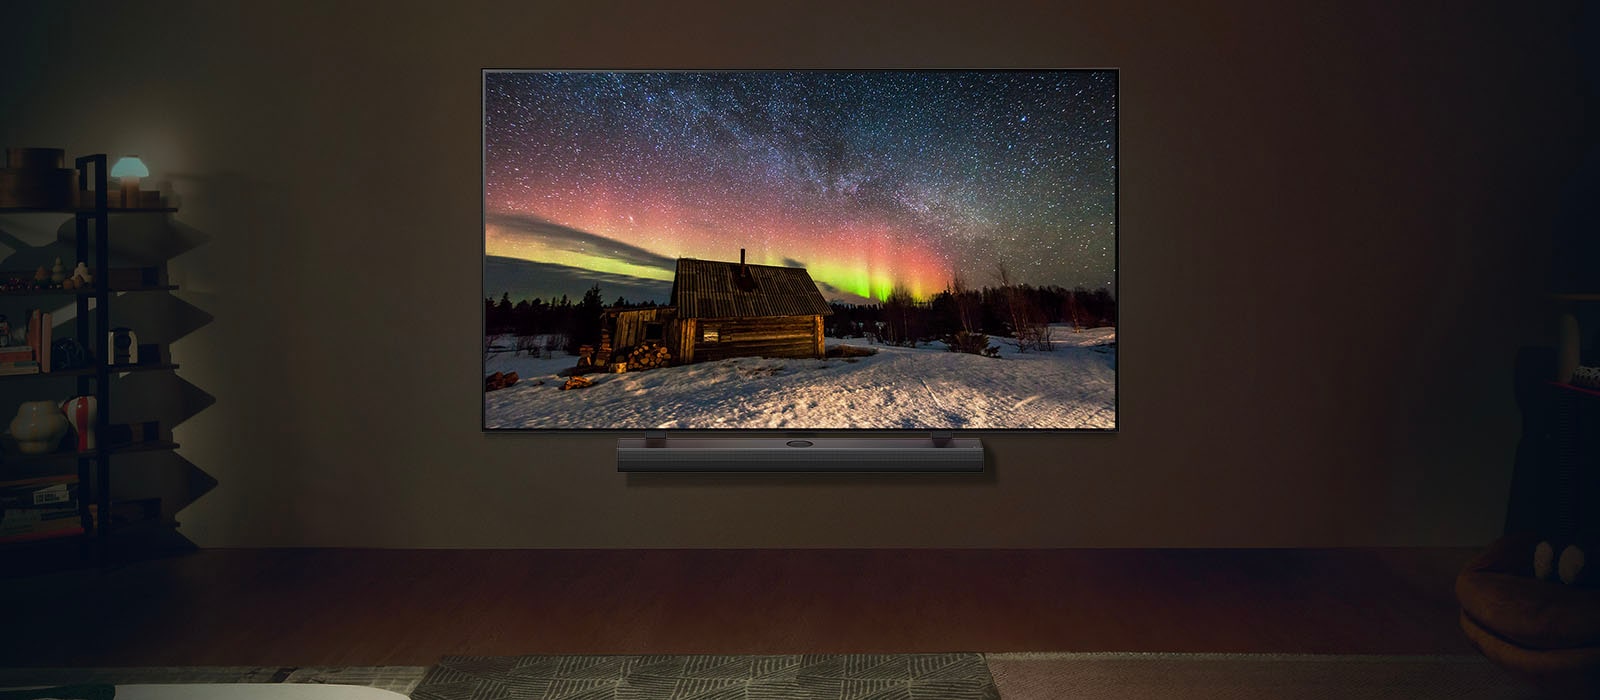 يظهر تلفزيون LG TV ومكبر الصوت LG Soundbar في غرفة معيشة عصرية في وضح النهار. يتم عرض صورة الشفق القطبي على الشاشة بمستويات السطوع المثالية.